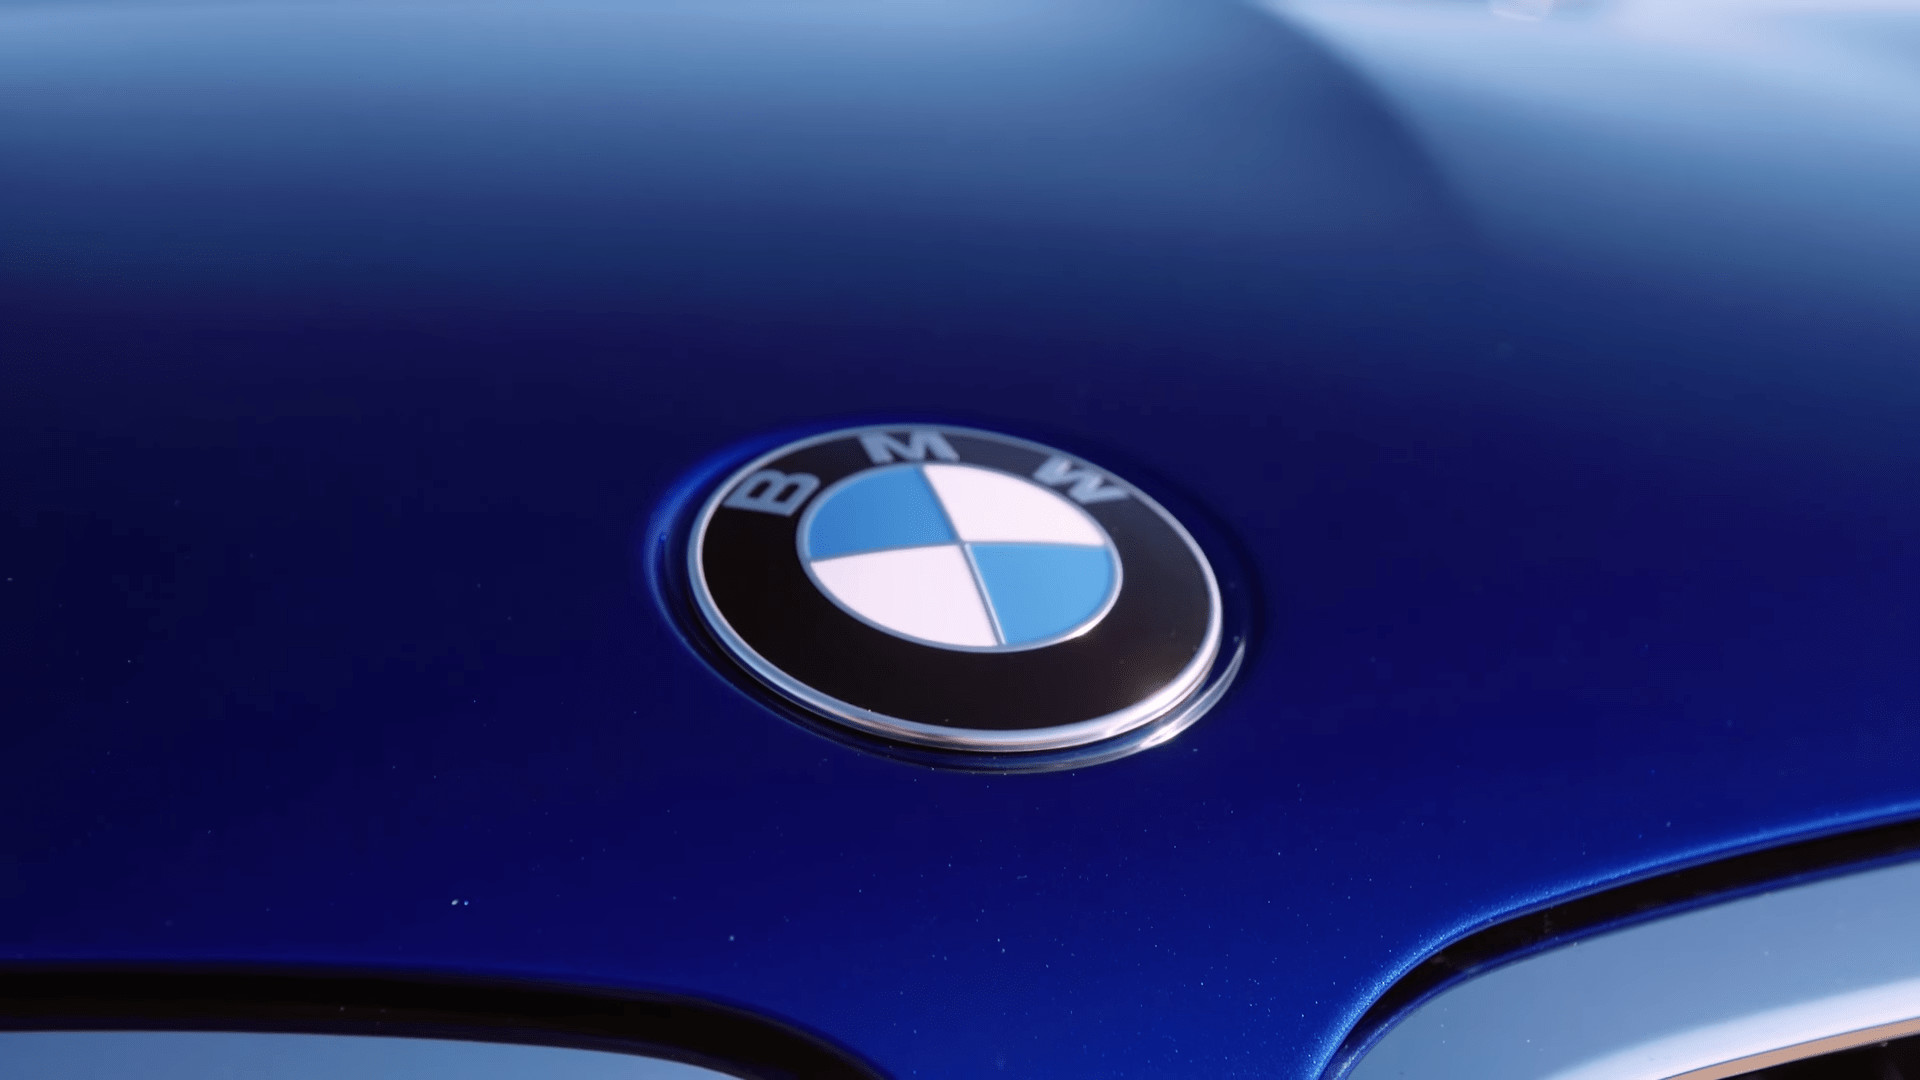 1920x1080 BMW M5 Logo Anzeigen Hd Wallpaper FÃ¼r Iphone Android Desktop Background